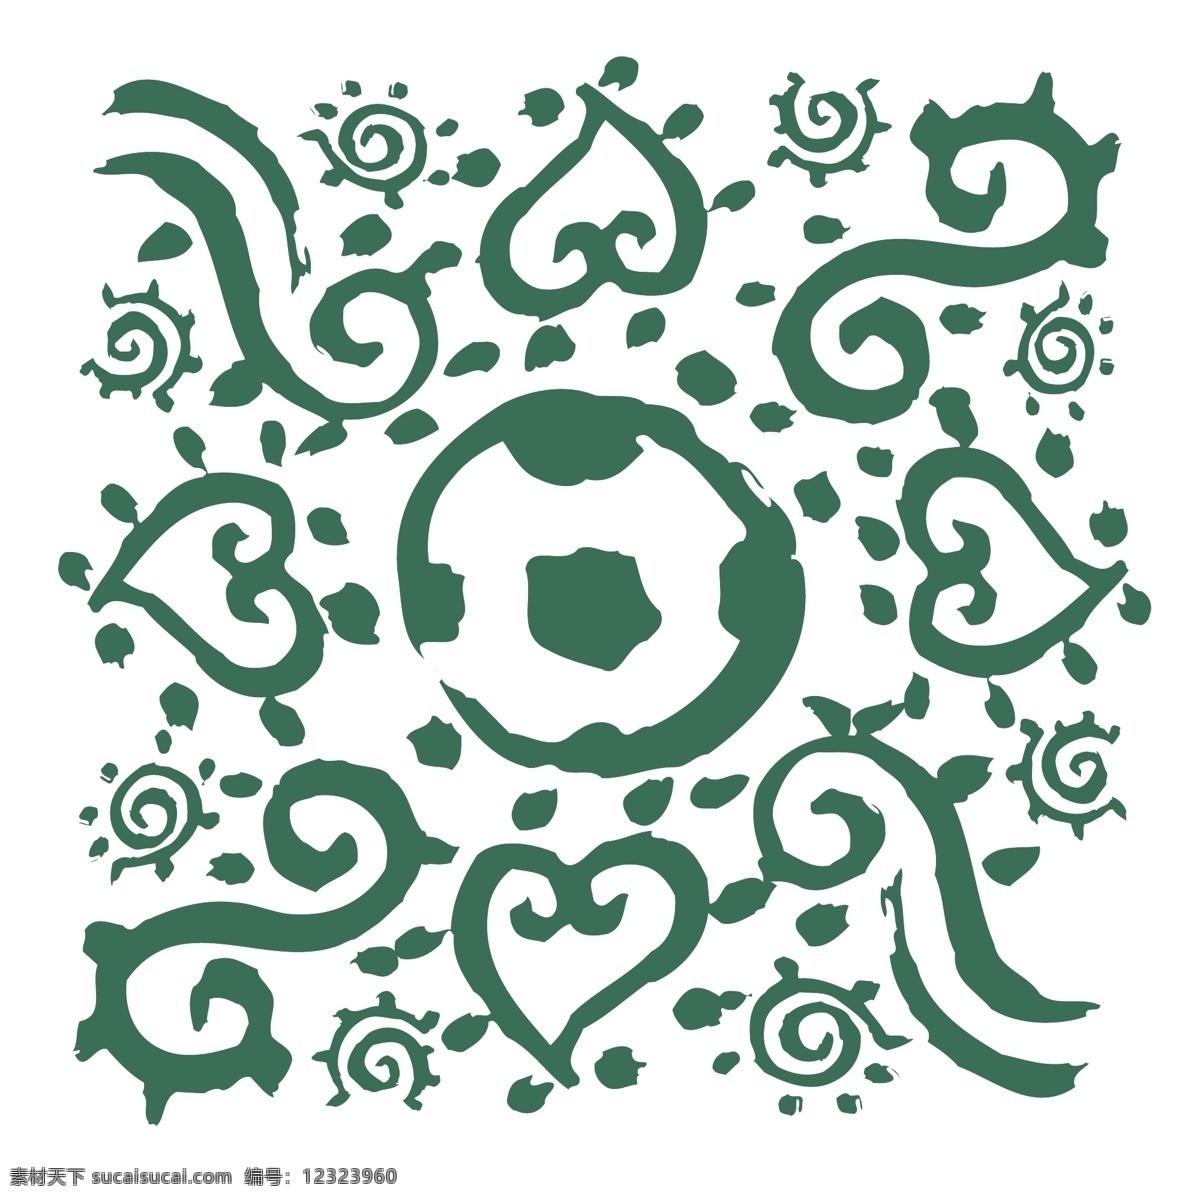 欧洲杯 2004 葡萄牙 欧 欧元 欧足联的欧元 向量 矢量 欧洲的标志 标志 标识 矢量图 建筑家居